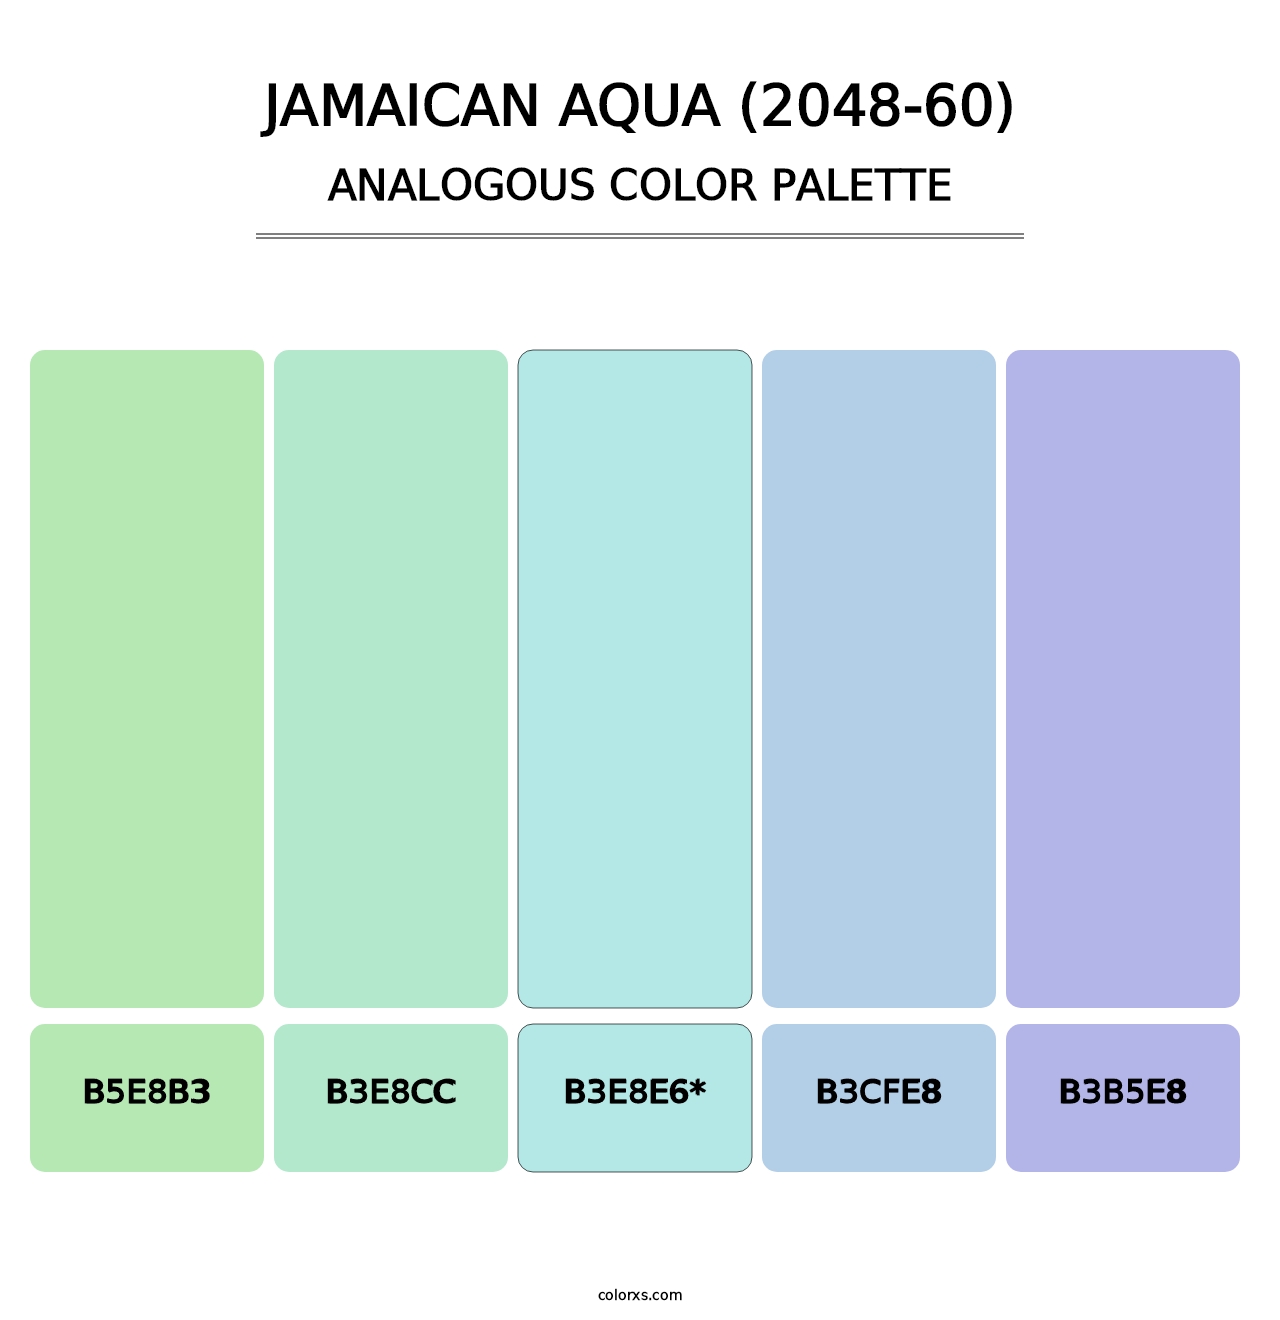 Jamaican Aqua (2048-60) - Analogous Color Palette